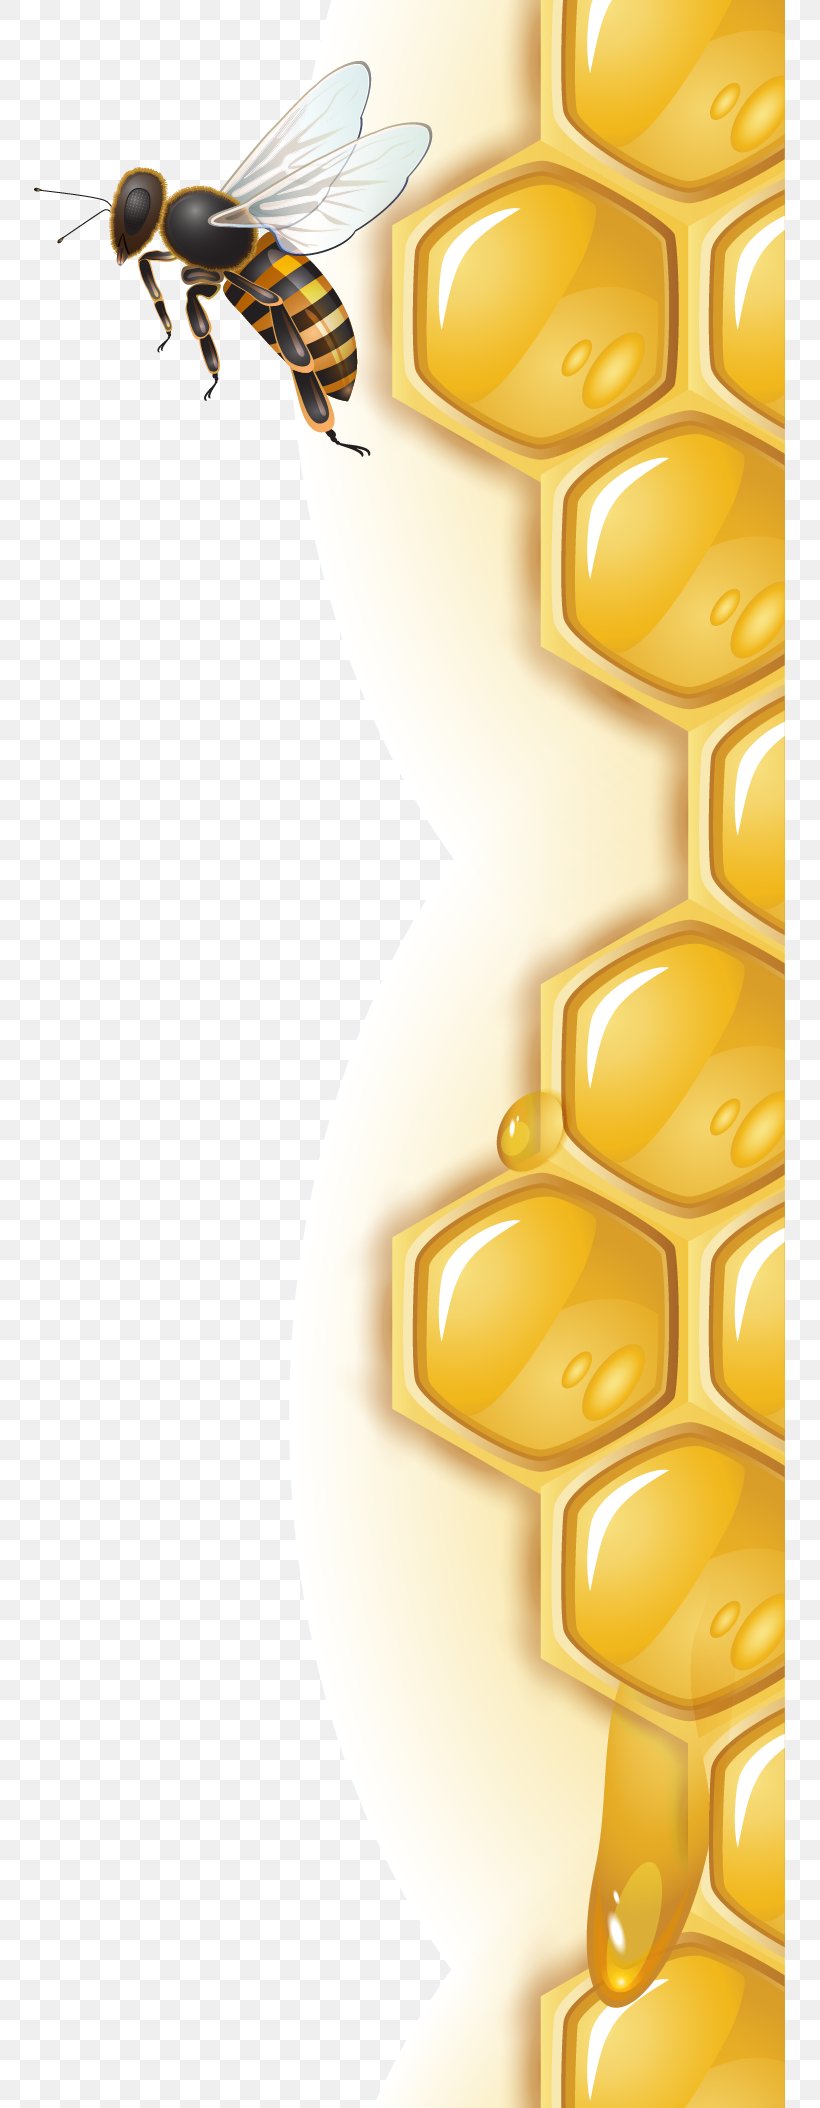 Honey Bee Honeycomb, PNG, 751x2108px, Bee, Beehive, Bumblebee, Cdr, Graphic Arts Download Free